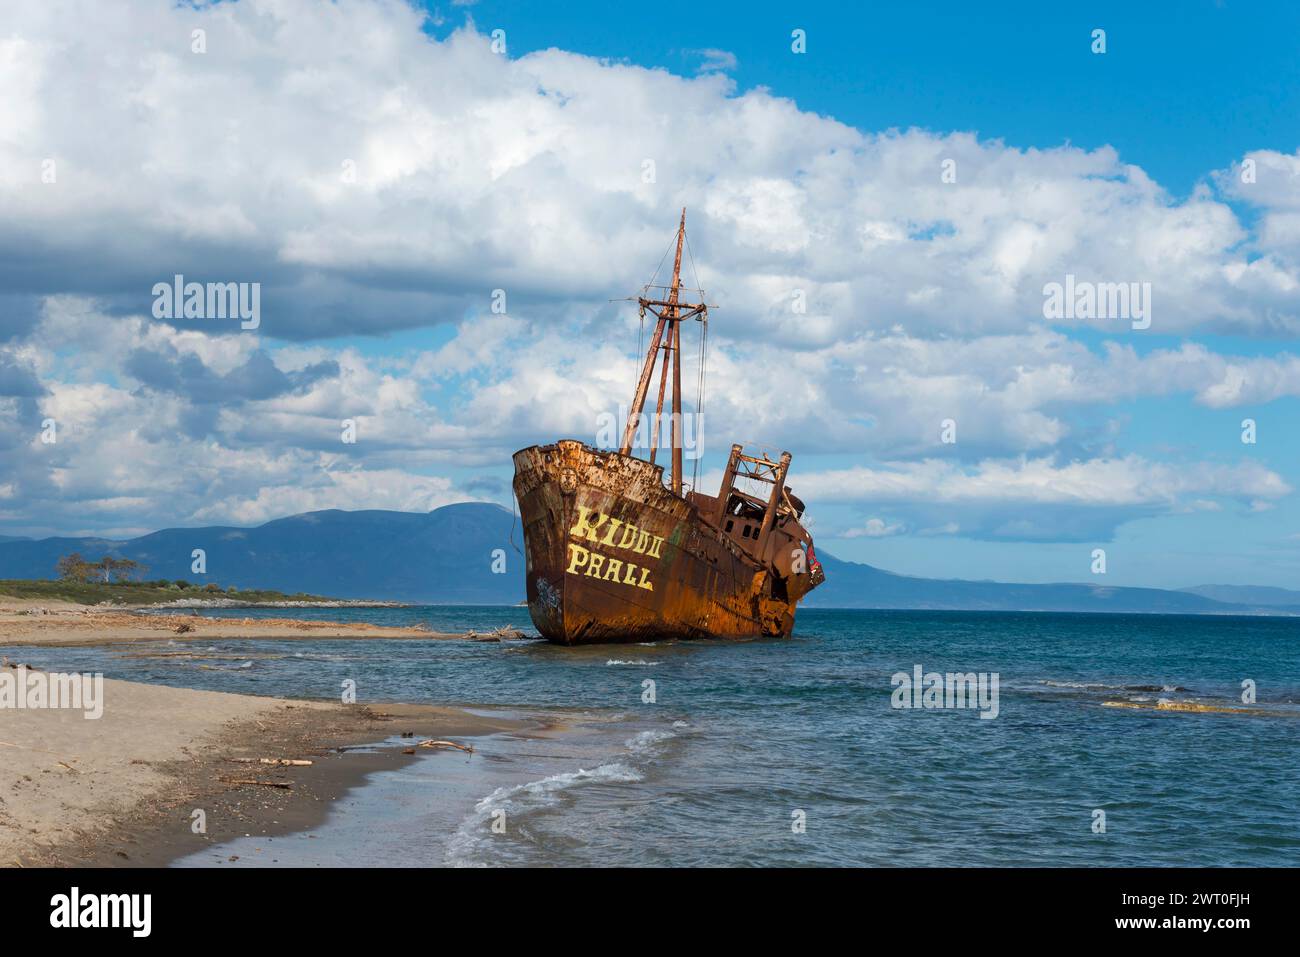 La proue d'un navire rouillé mange dans la plage de sable contre un ciel bleu et des nuages moelleux, naufrage Dimitrios, plage de Glyfada, Selinitsa, Gythio Banque D'Images